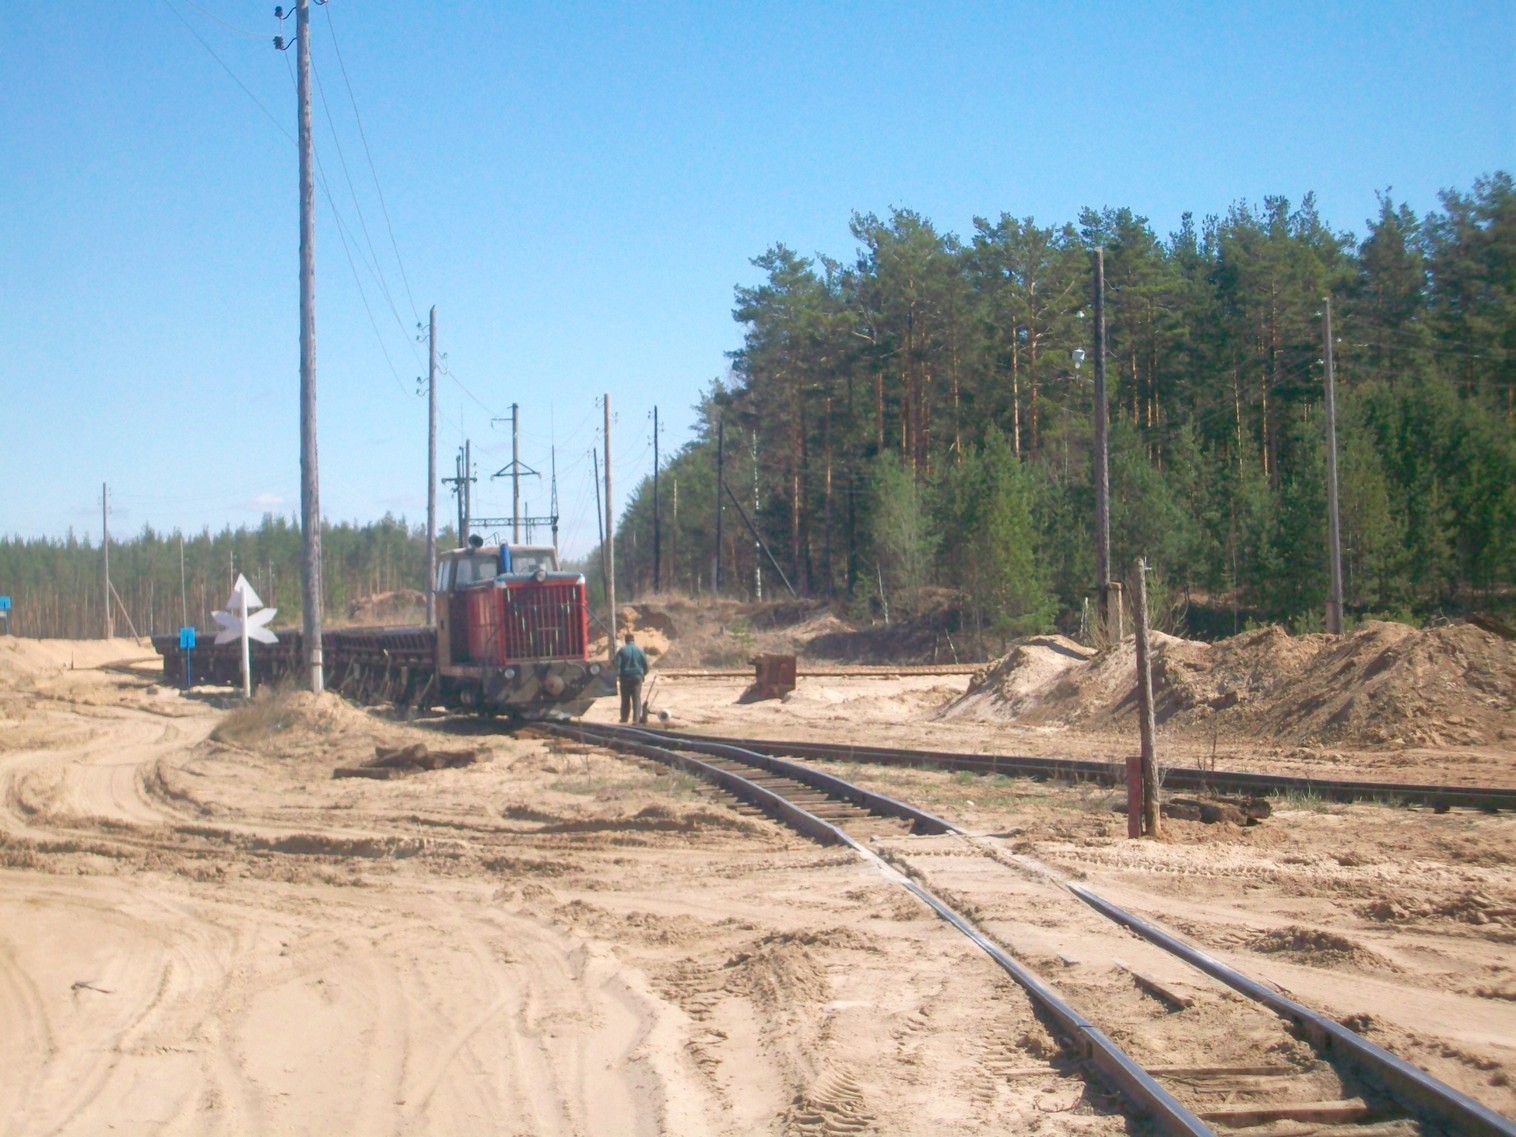 Узкоколейная железная дорога  Тверского комбината строительных материалов №2 — фотографии, сделанные в 2014 году (часть 5)